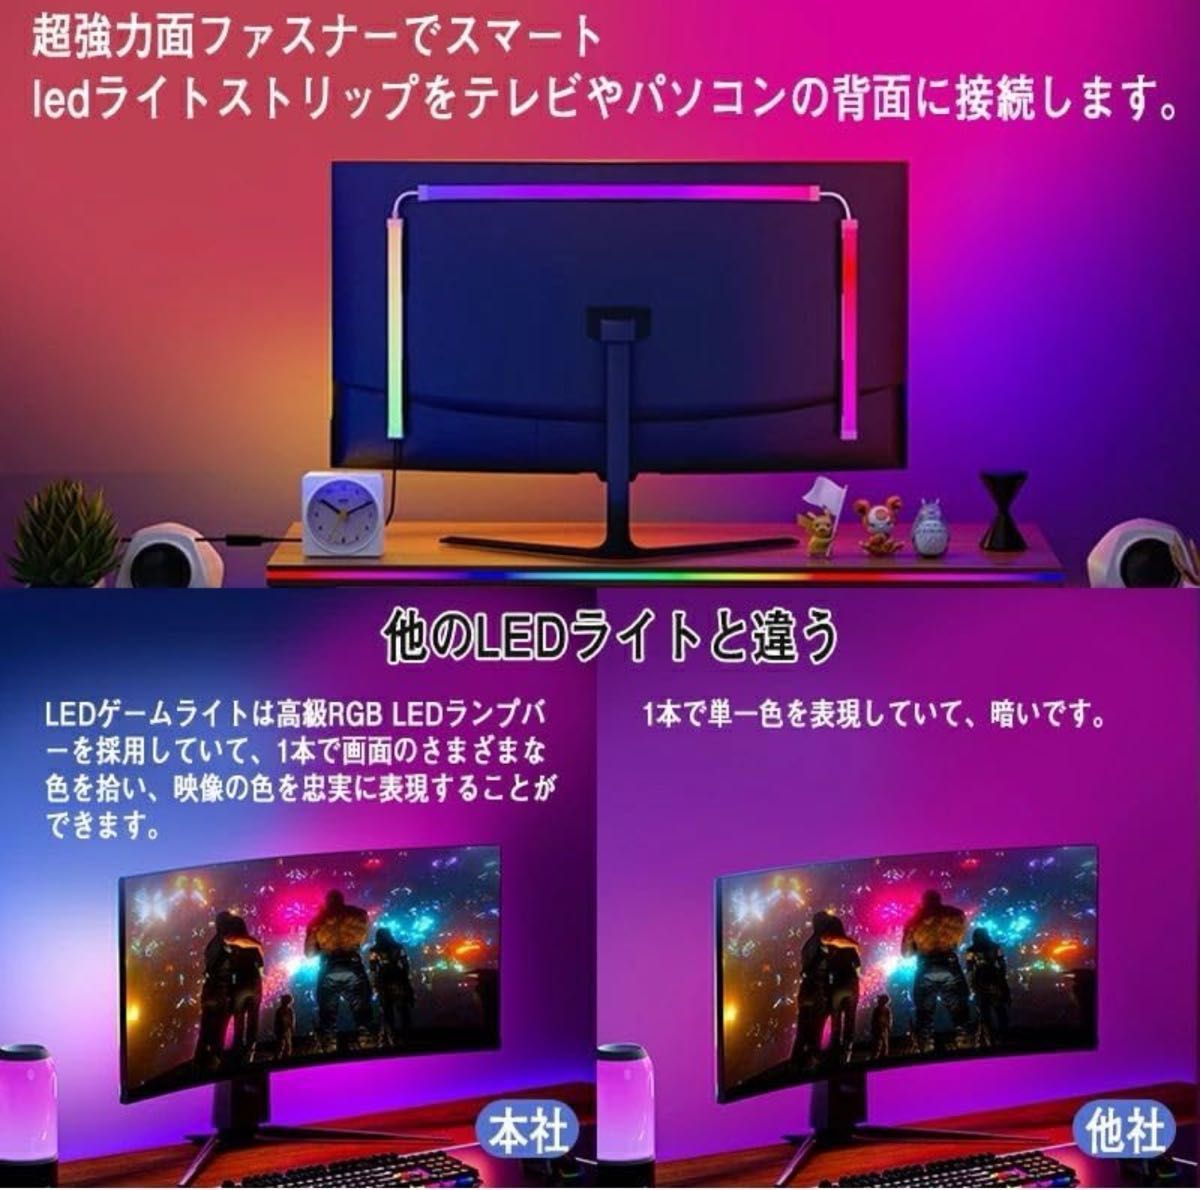 モニターの後ろのコンピューターライトバー デスクゲーム用LED 画面の色や音楽と同期 USBインターフェース (27インチの4角)